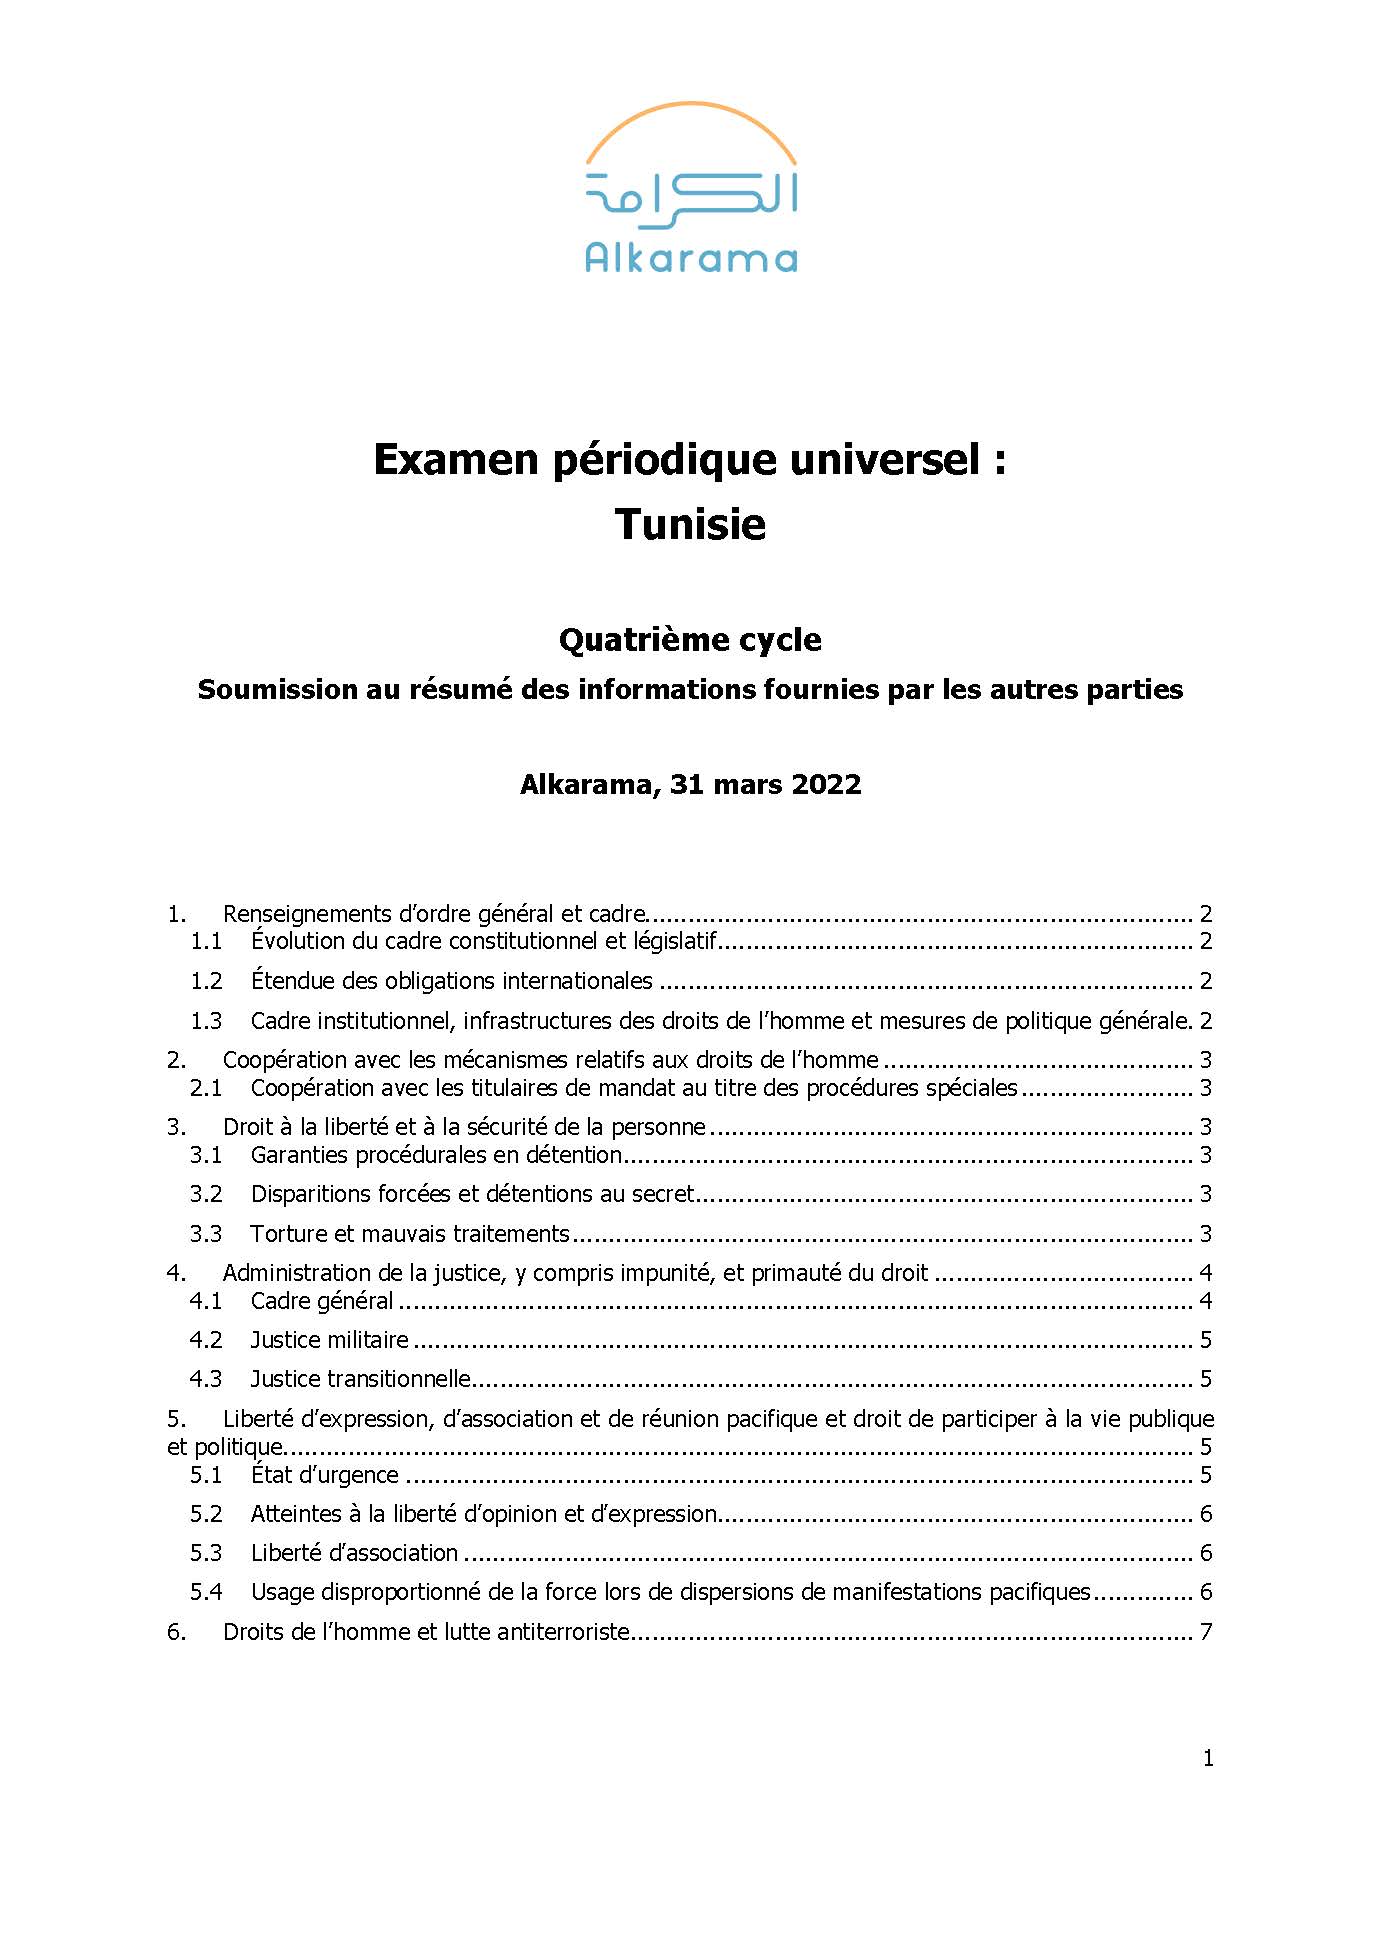 Tunisie: Examen Périodique Universel – Quatrième cycle - rapport d'Alkarama mars 2022